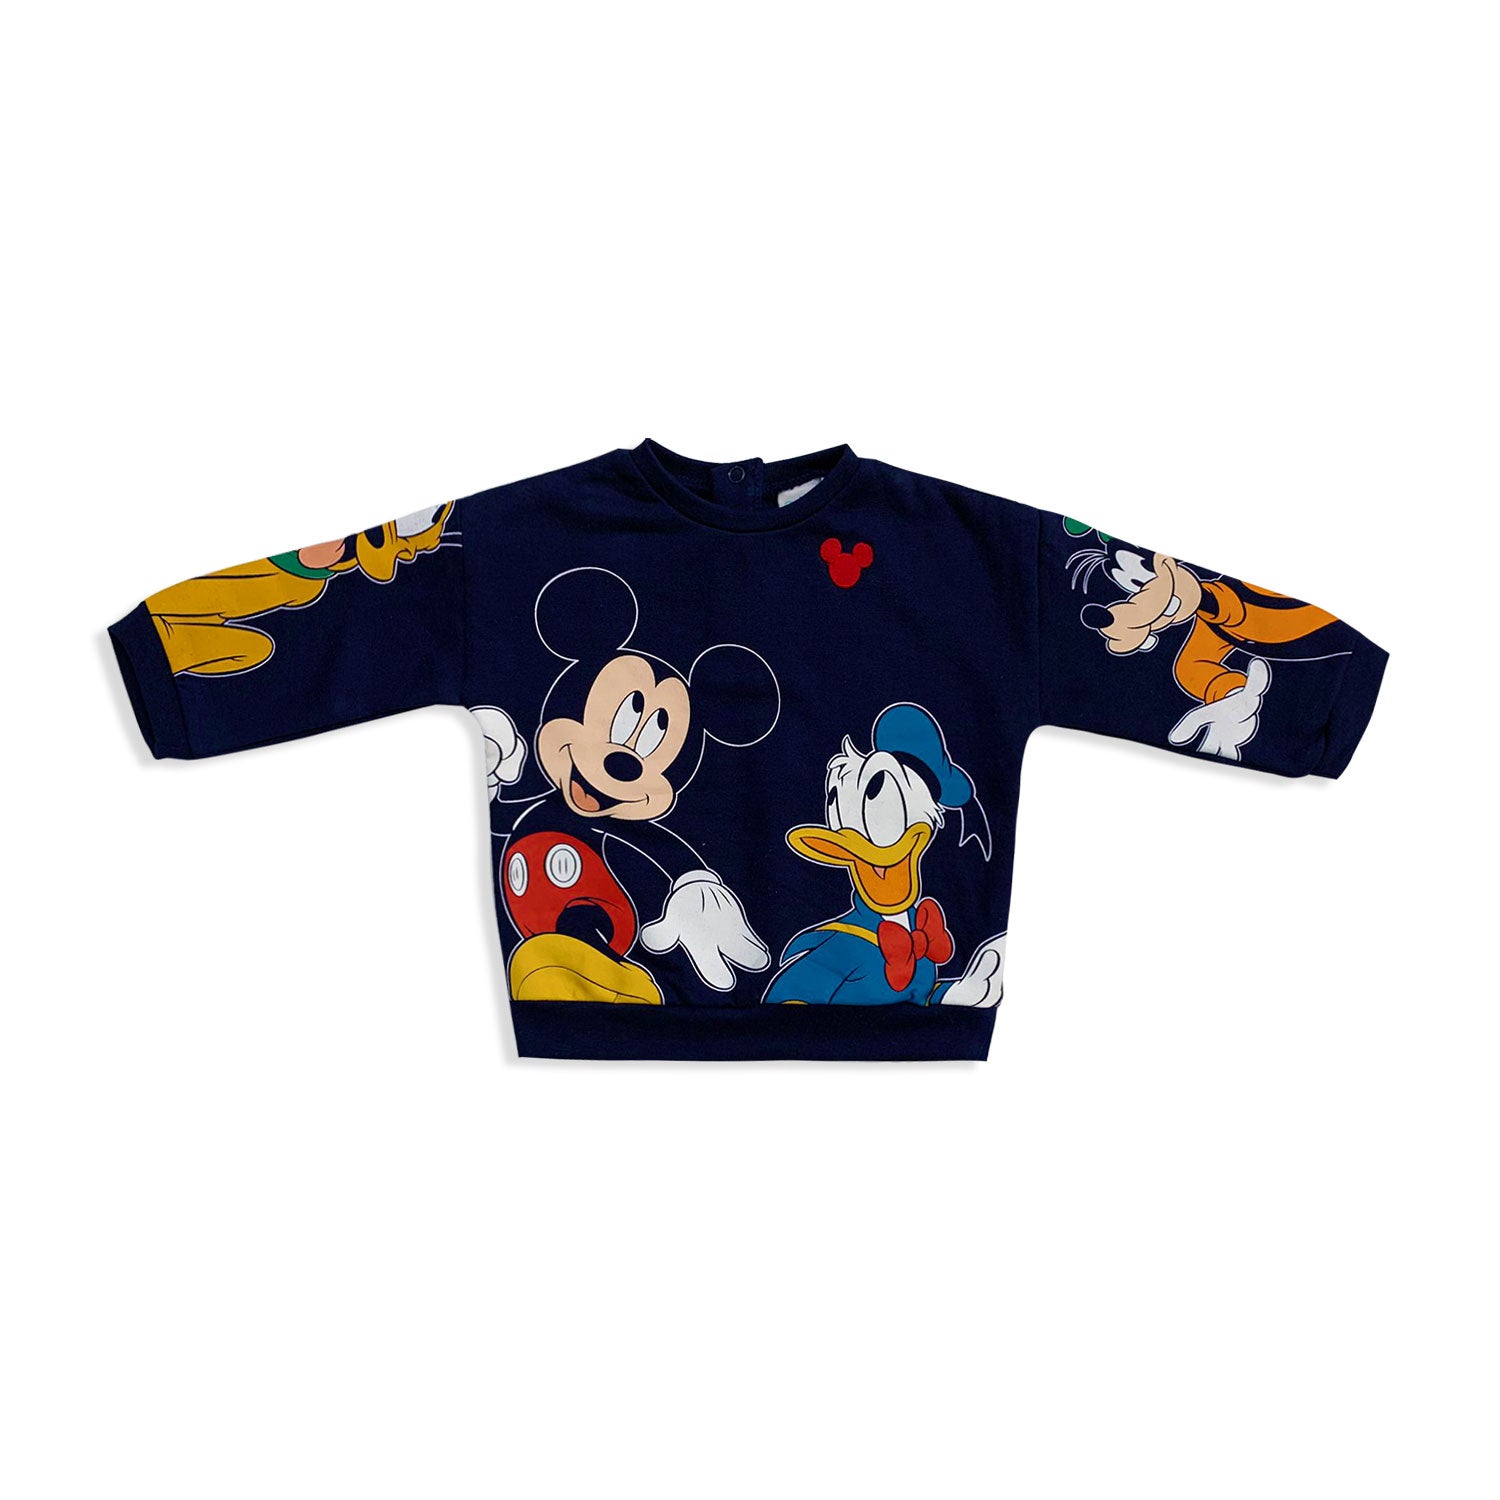 Felpa neonato Disney Mickey Mouse friends in cotone bimbo maniche lunghe 5530